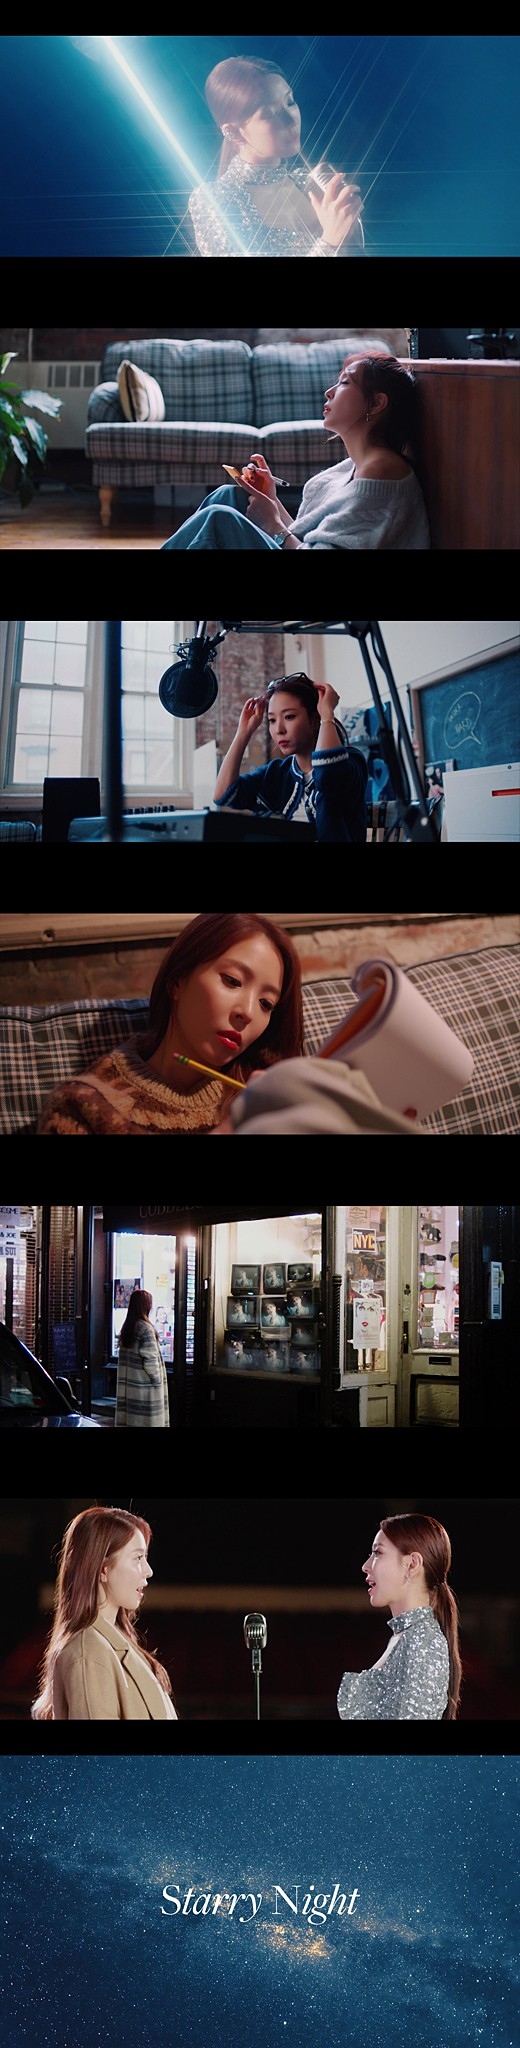 宝儿公开新曲《Starry Night》MV 与CRUSH出色配合呈现冬日情歌